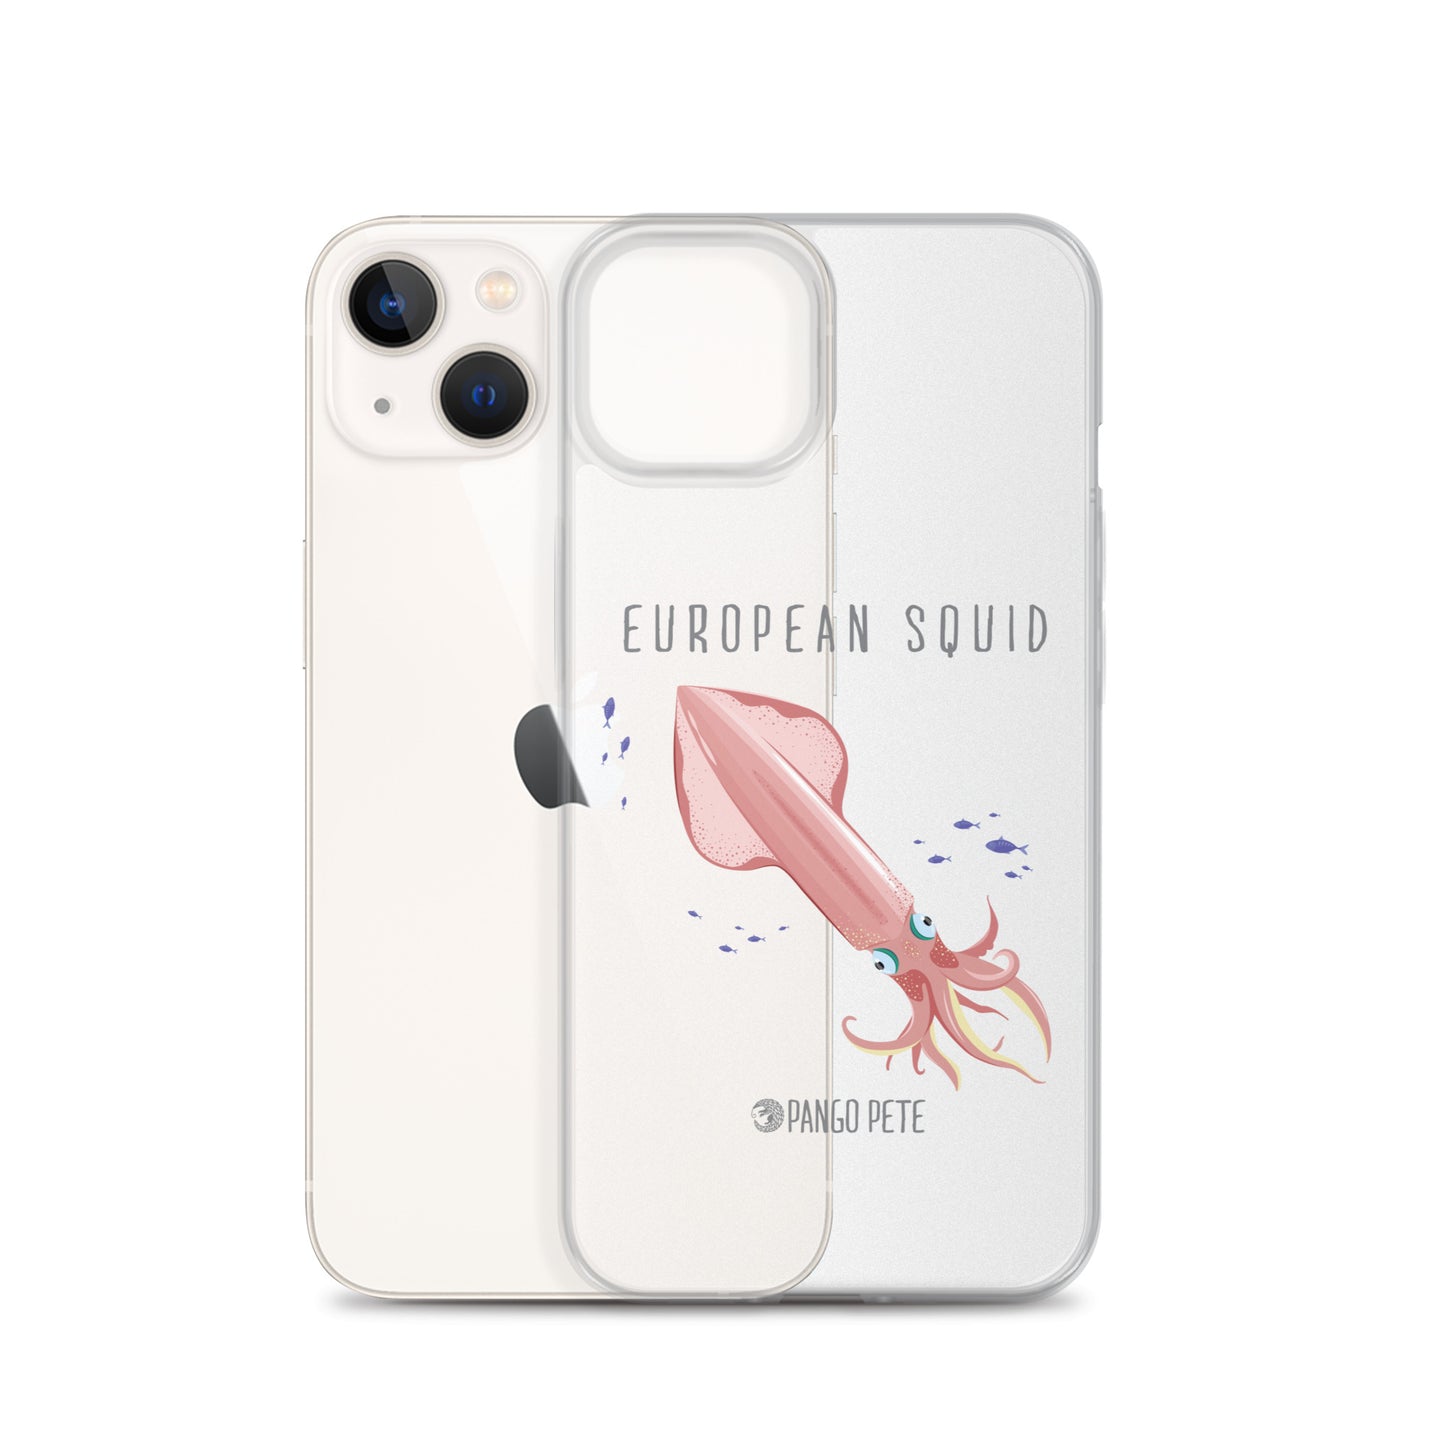 European Squid iPhone Case